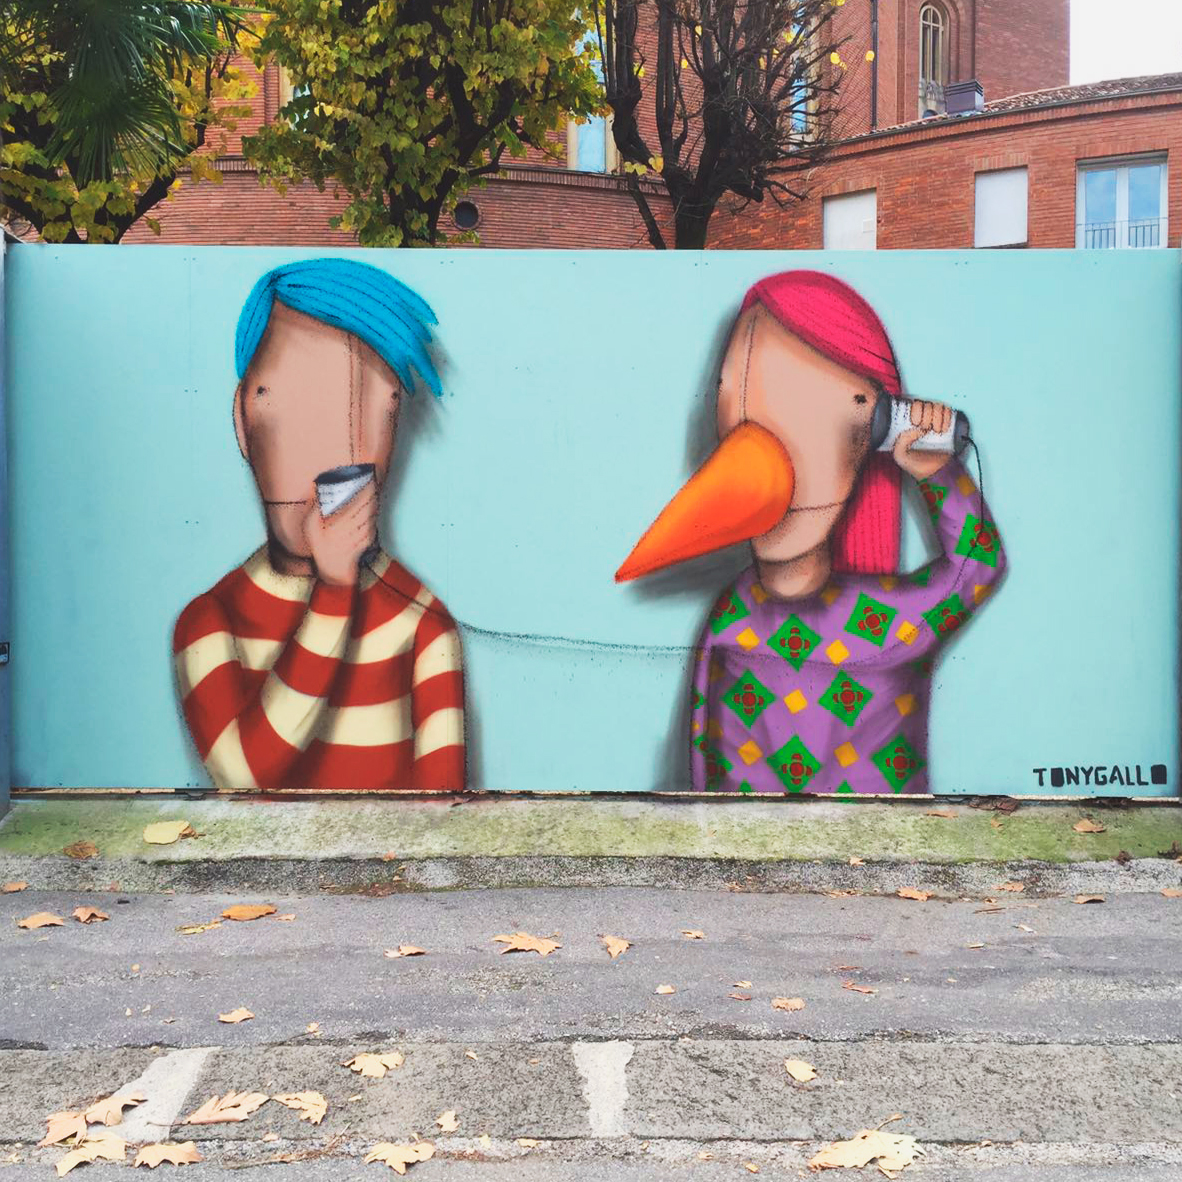 Tony Gallo - Graffiti Steet Art - Scuola d'infanzia e nido integrato S. Prosdocimo - Padova, 2016